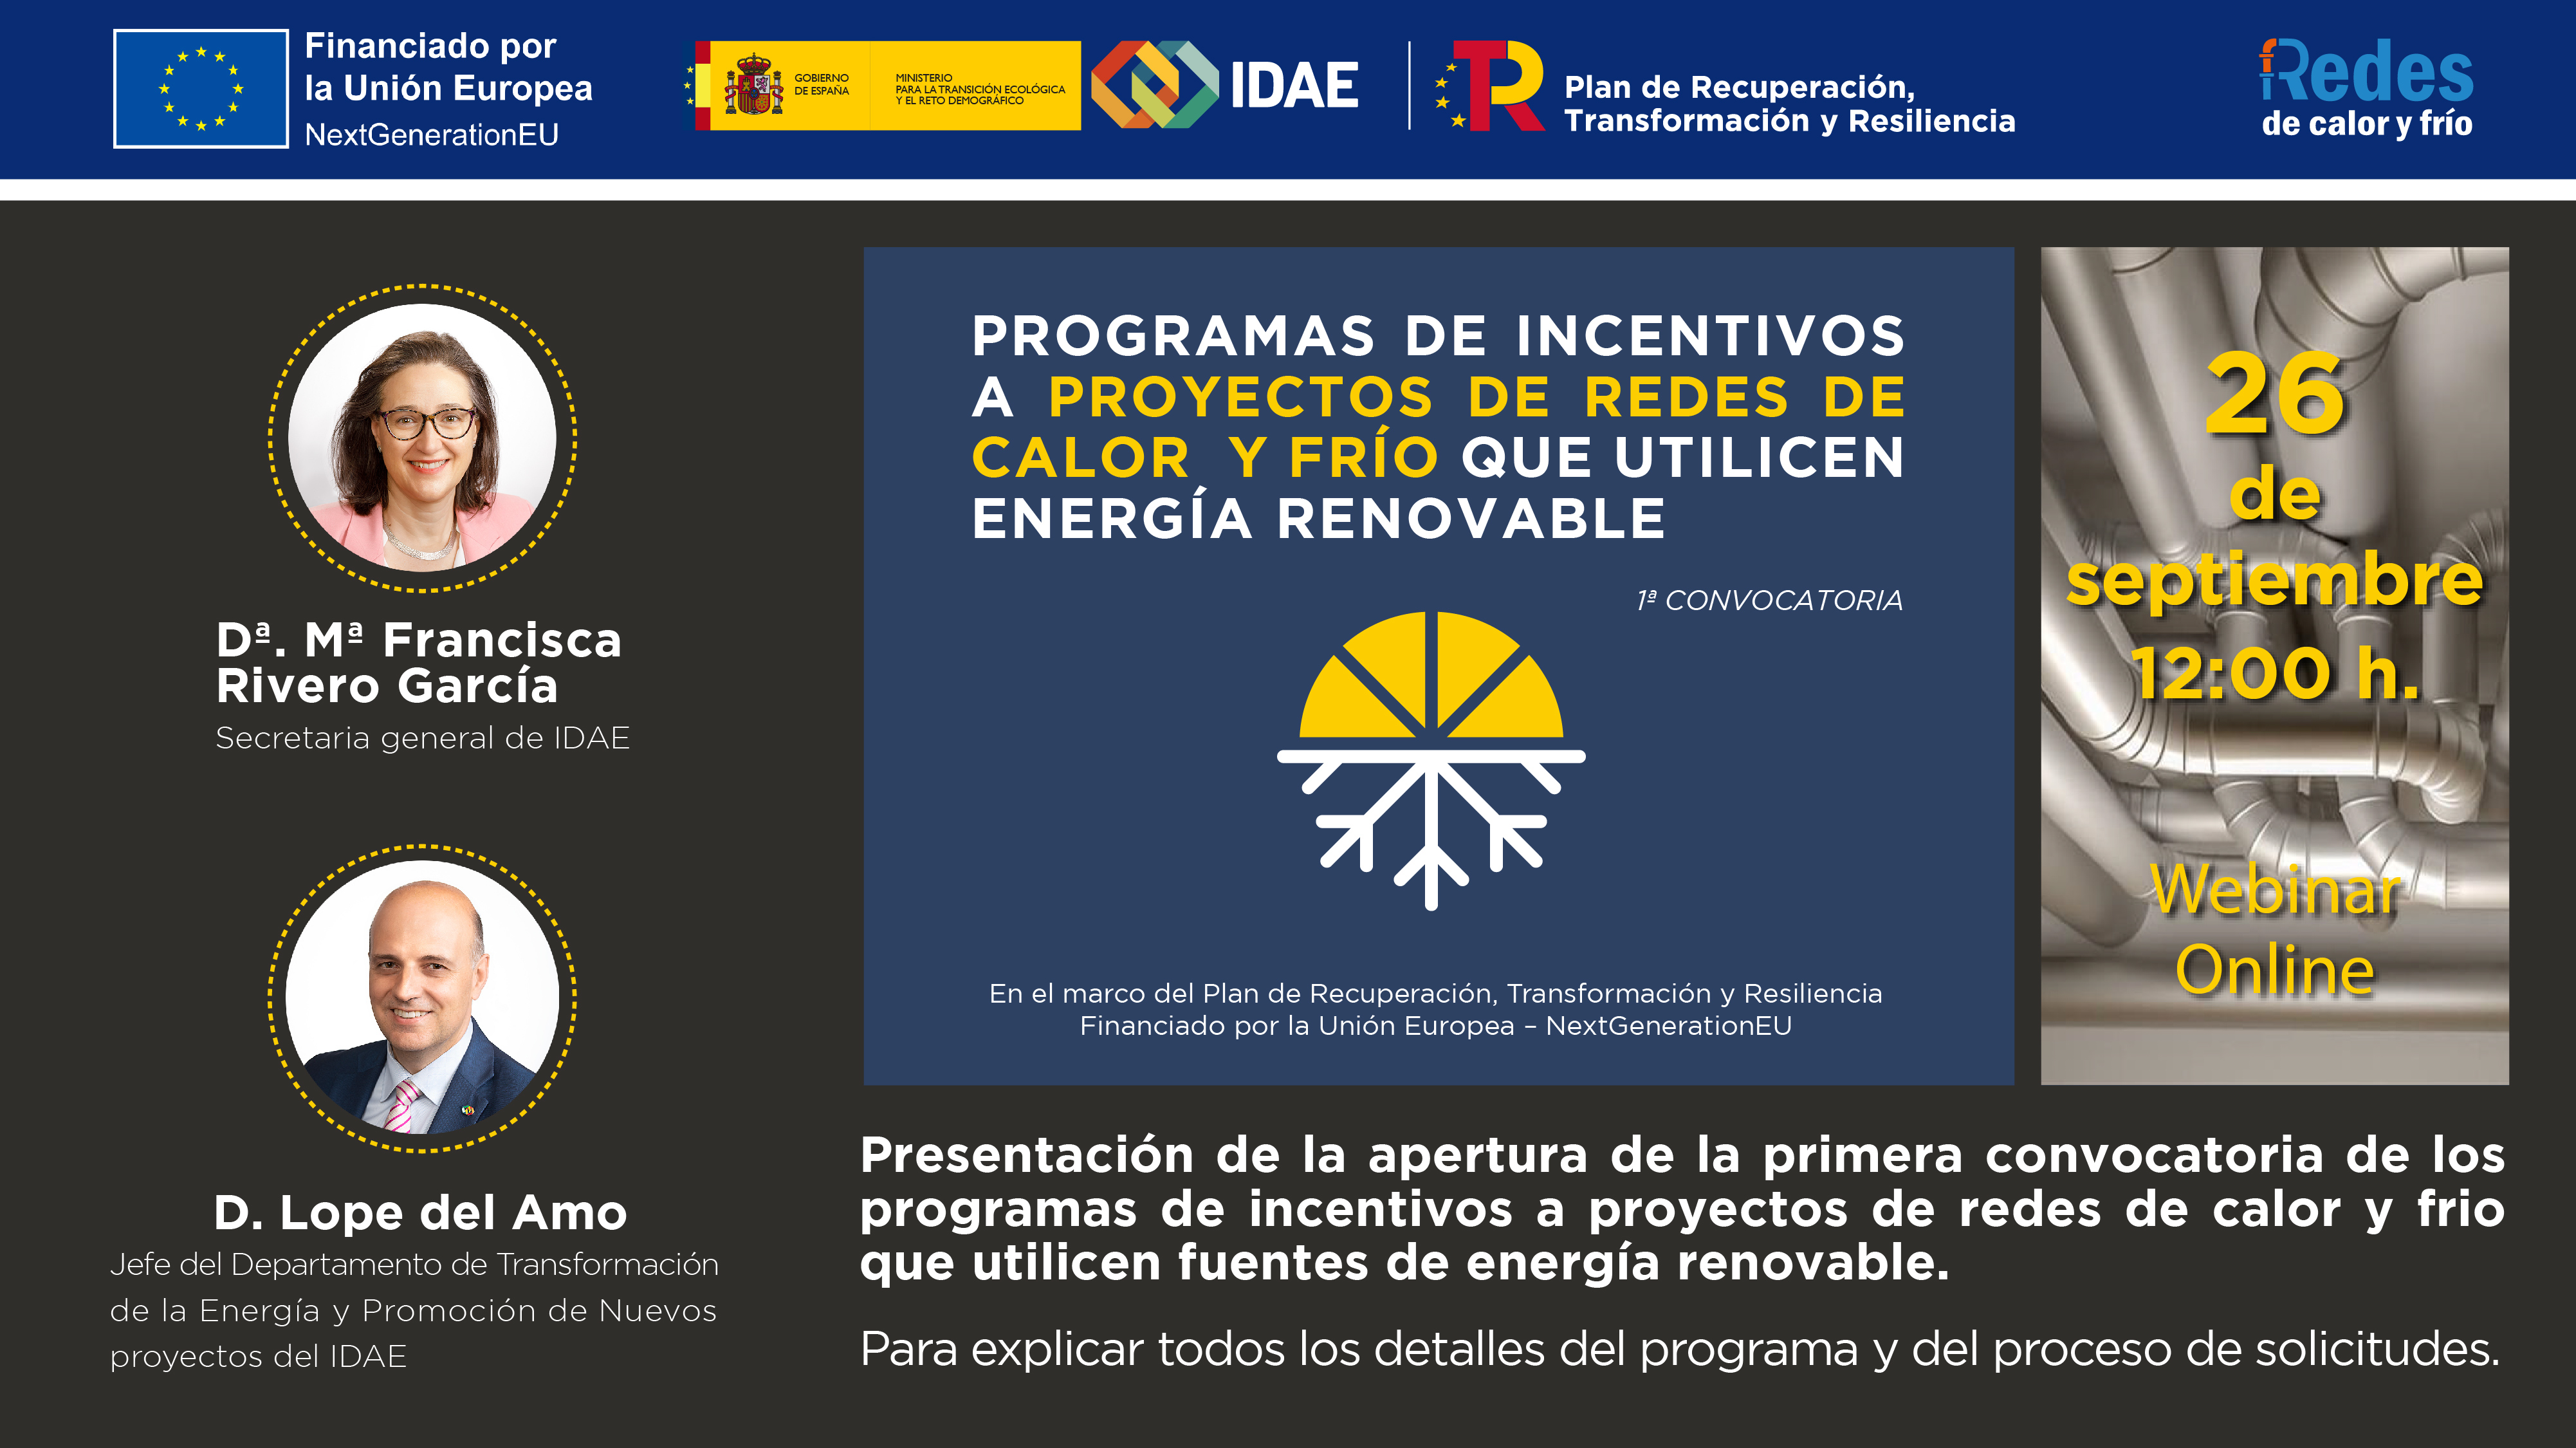 Presentación de la apertura de la primera convocatoria de los programas de incentivos a proyectos de redes de calor y frío que utilicen fuentes de energía renovable